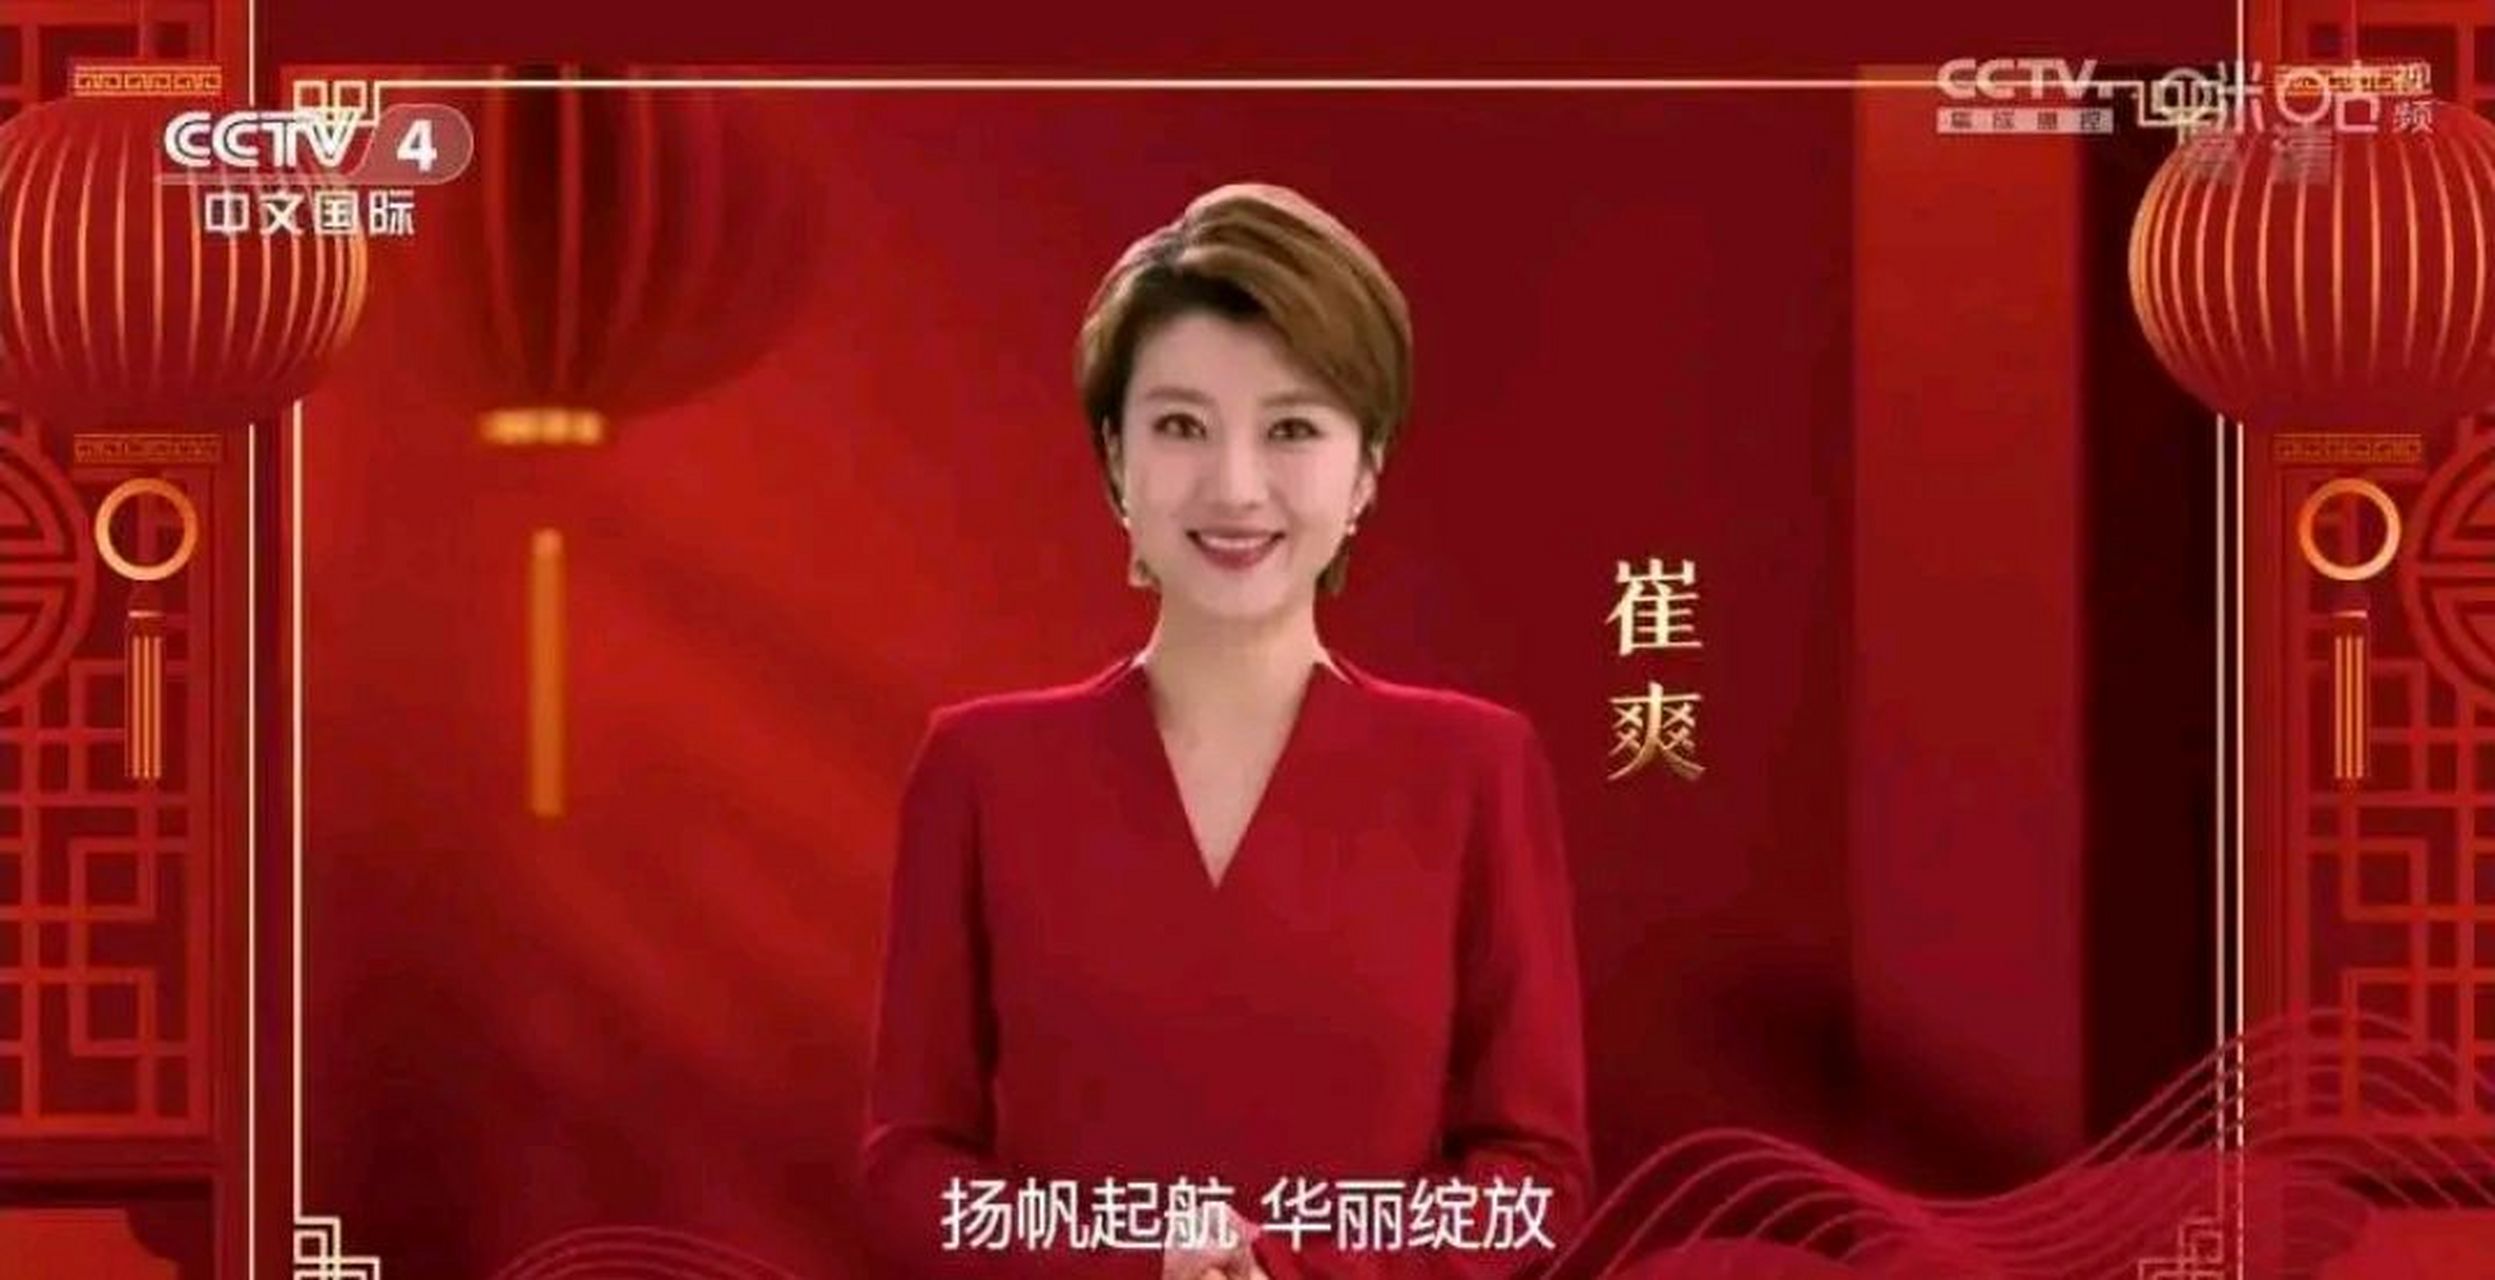 央视中文国际频道(cctv-4)2022年的女主持人:崔爽,纪萌,宋一平,吕小骏